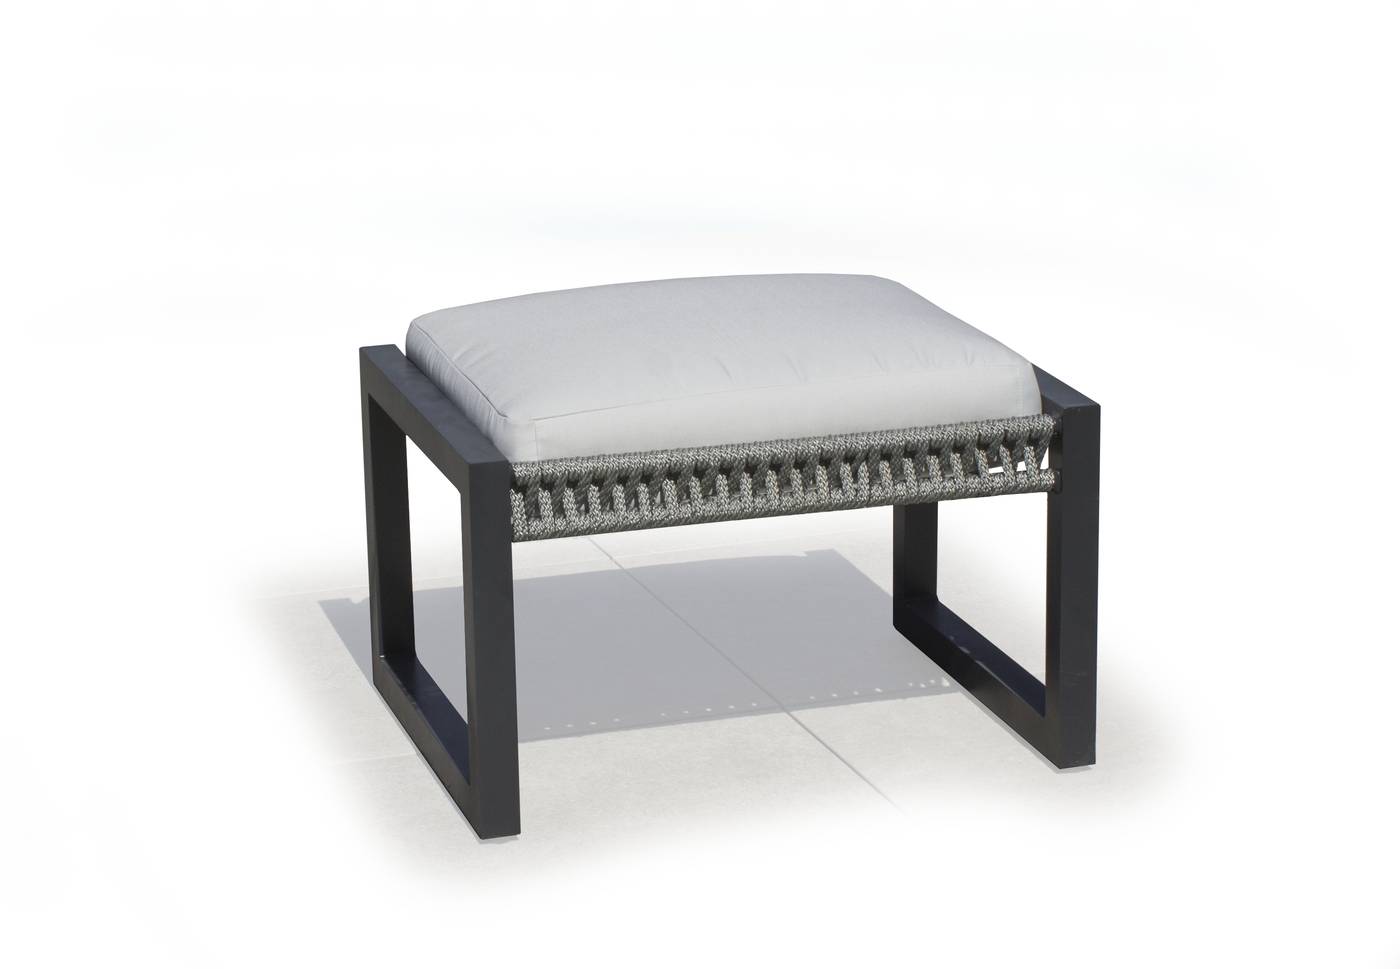 Set Aluminio Bolonia-980 - Conjunto aluminio y cuerda: 1 sofá de 3 plazas + 2 sillones + 1 mesa de centro + 2 taburetes. Respaldos reclinables. Colores: blanco, gris, marrón o champagne.